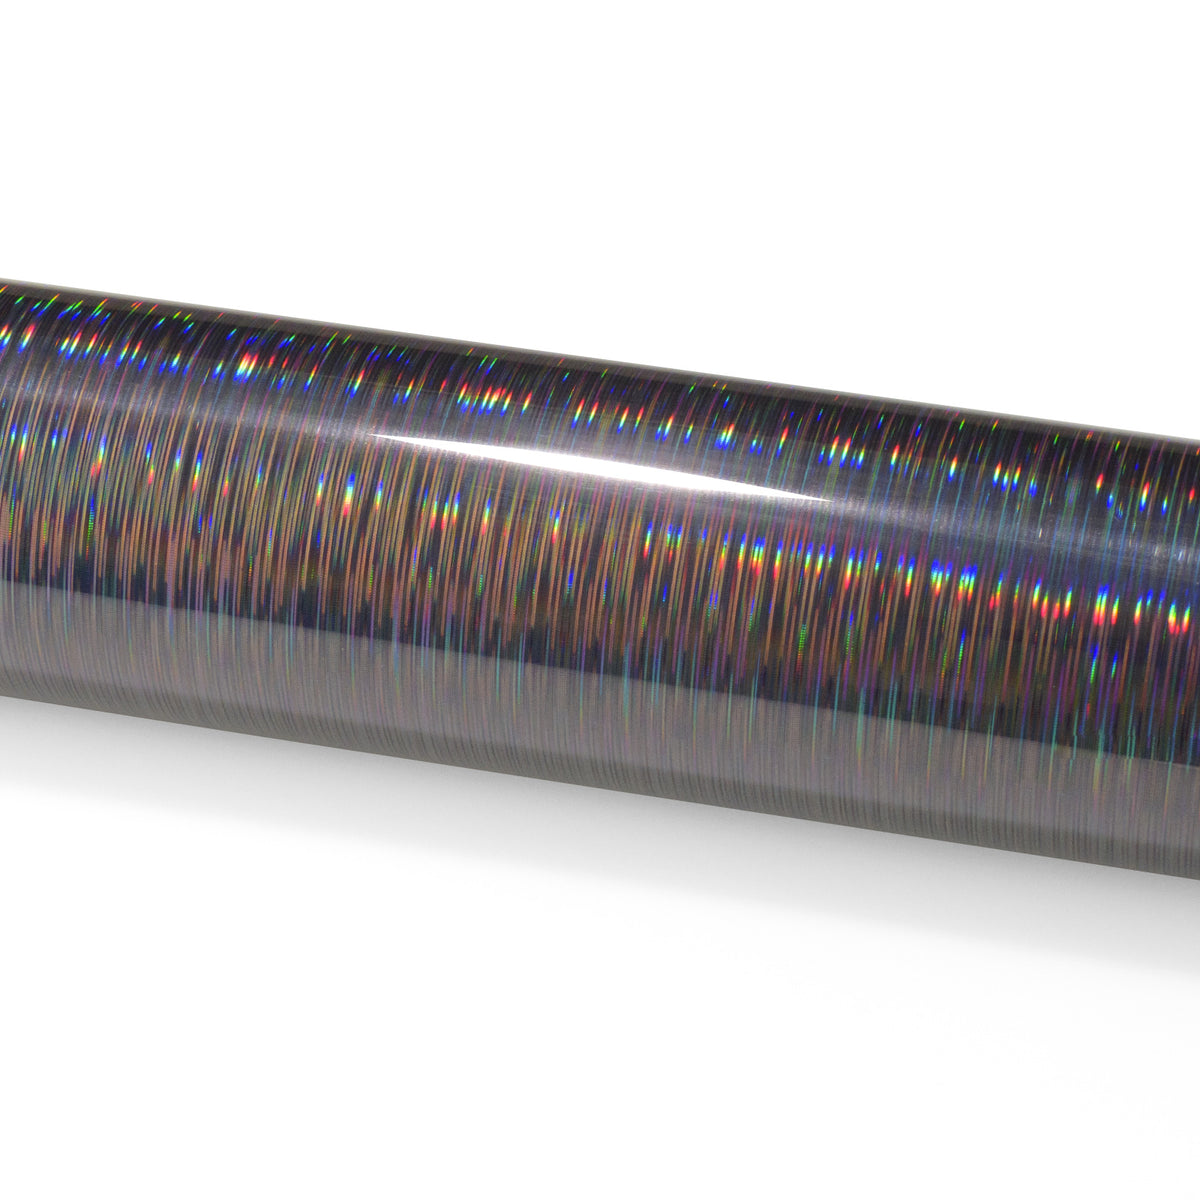 Holographic Brushed Aluminum Gold Rainbow Vinyl Wrap – EzAuto Wrap